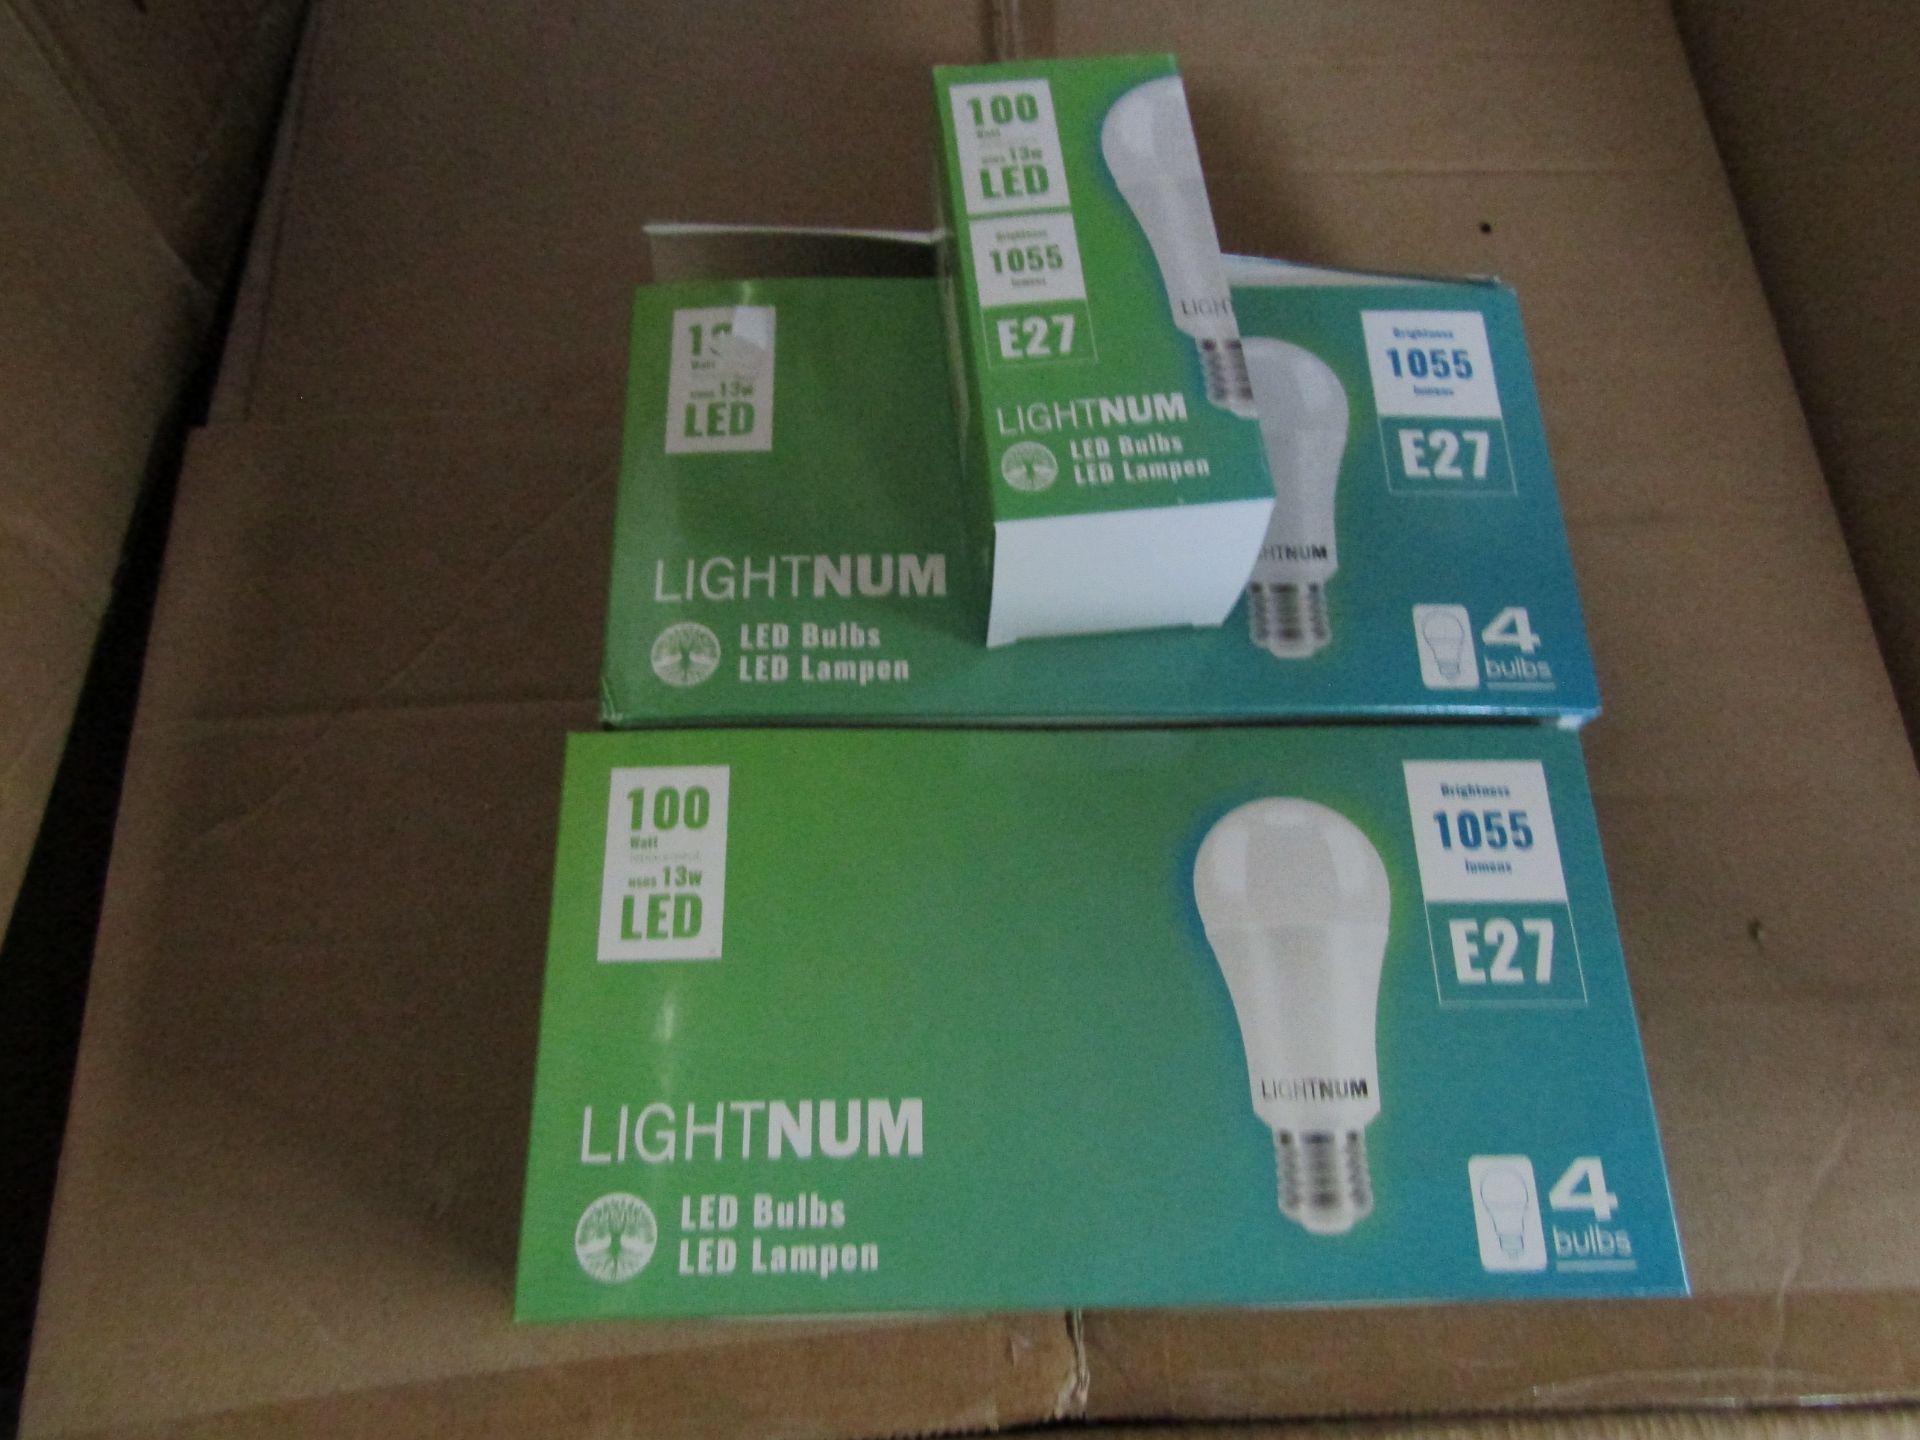 5X LIGHTNUM - E27 1055 Lumen LED Light Bulbs - Pack of 4 - New & Boxed.